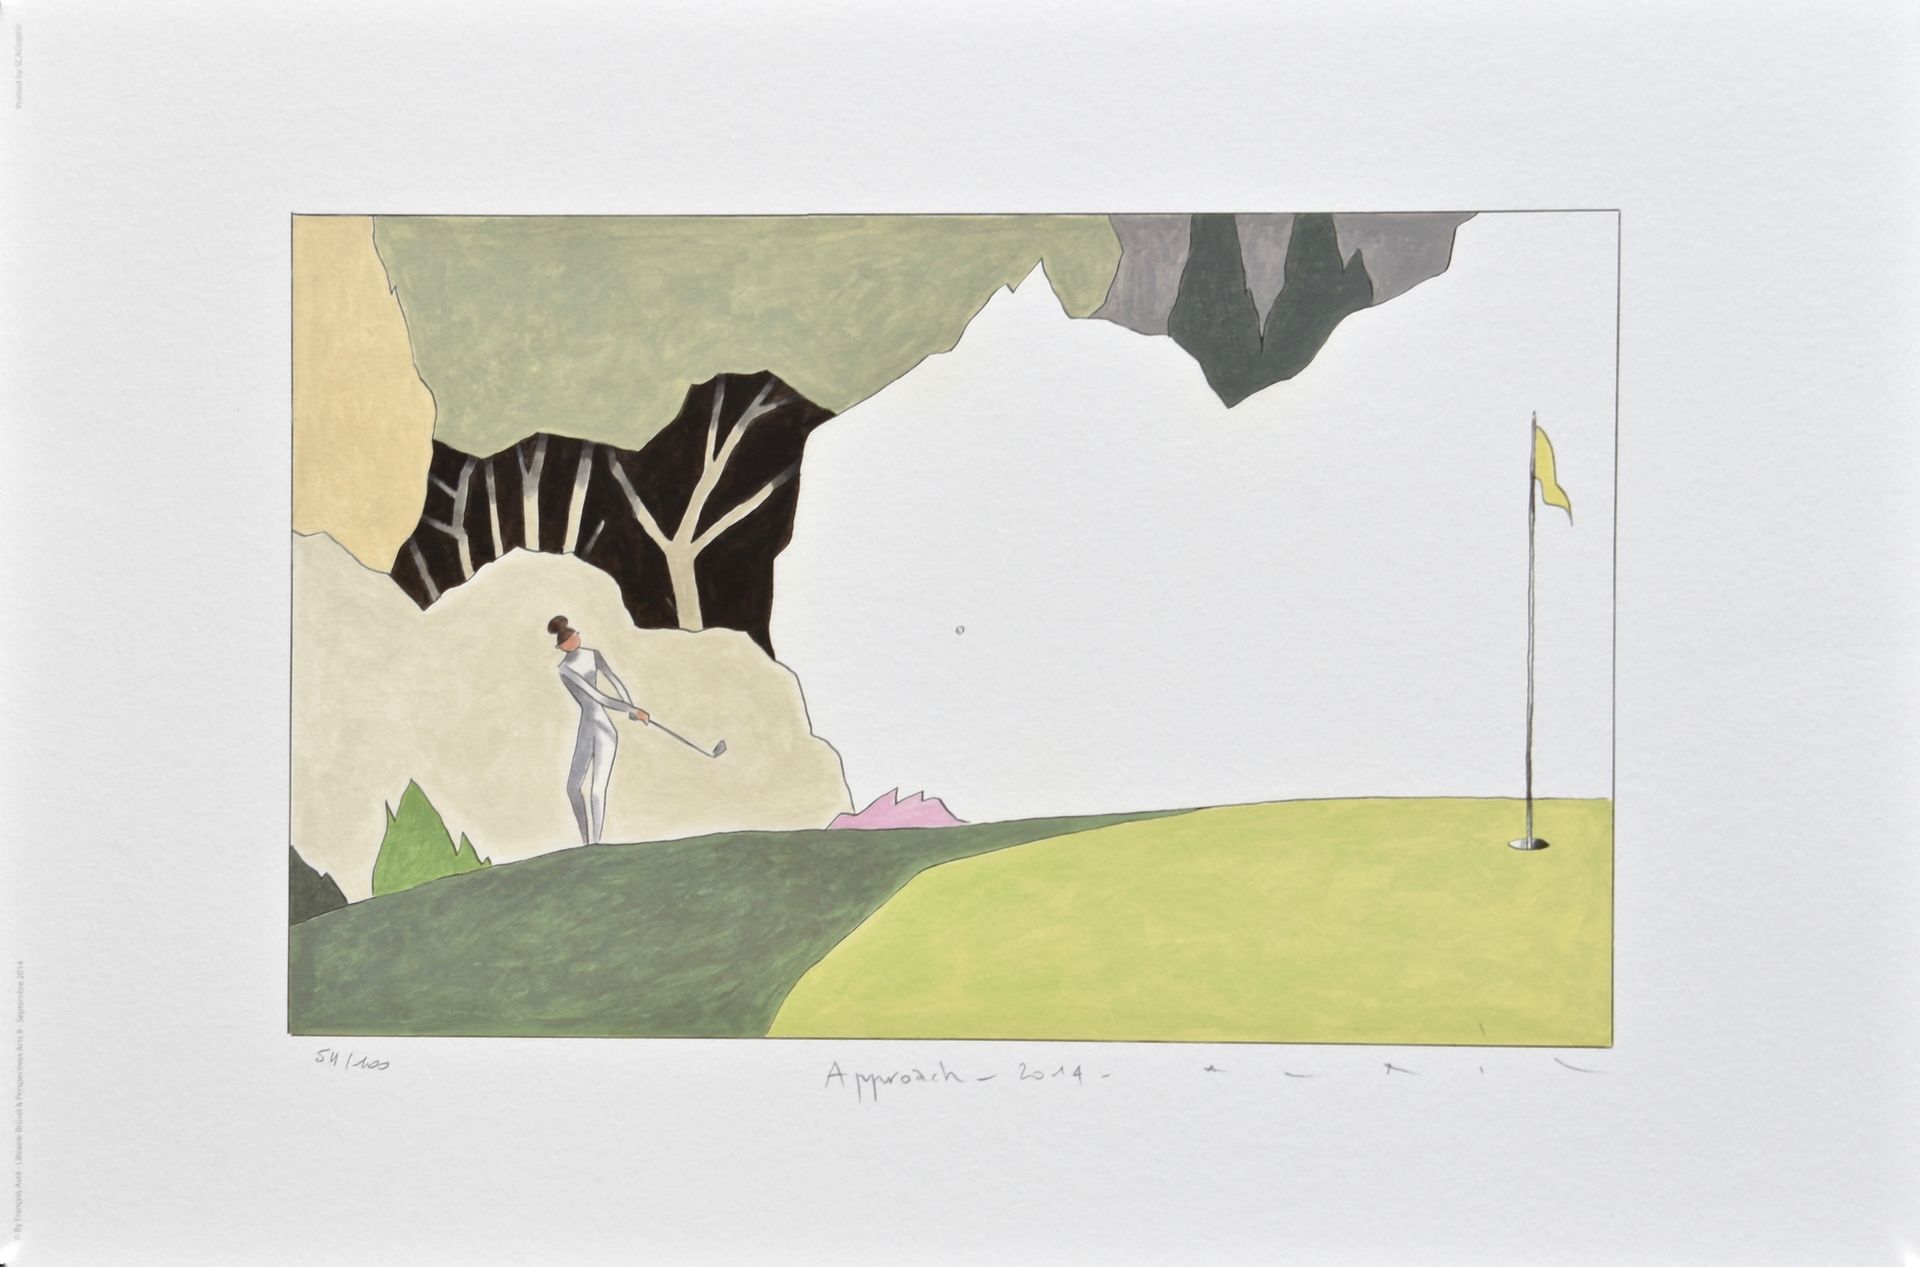 François AVRIL François Avril

Approccio al golf



Poster firmato e numerato

E&hellip;